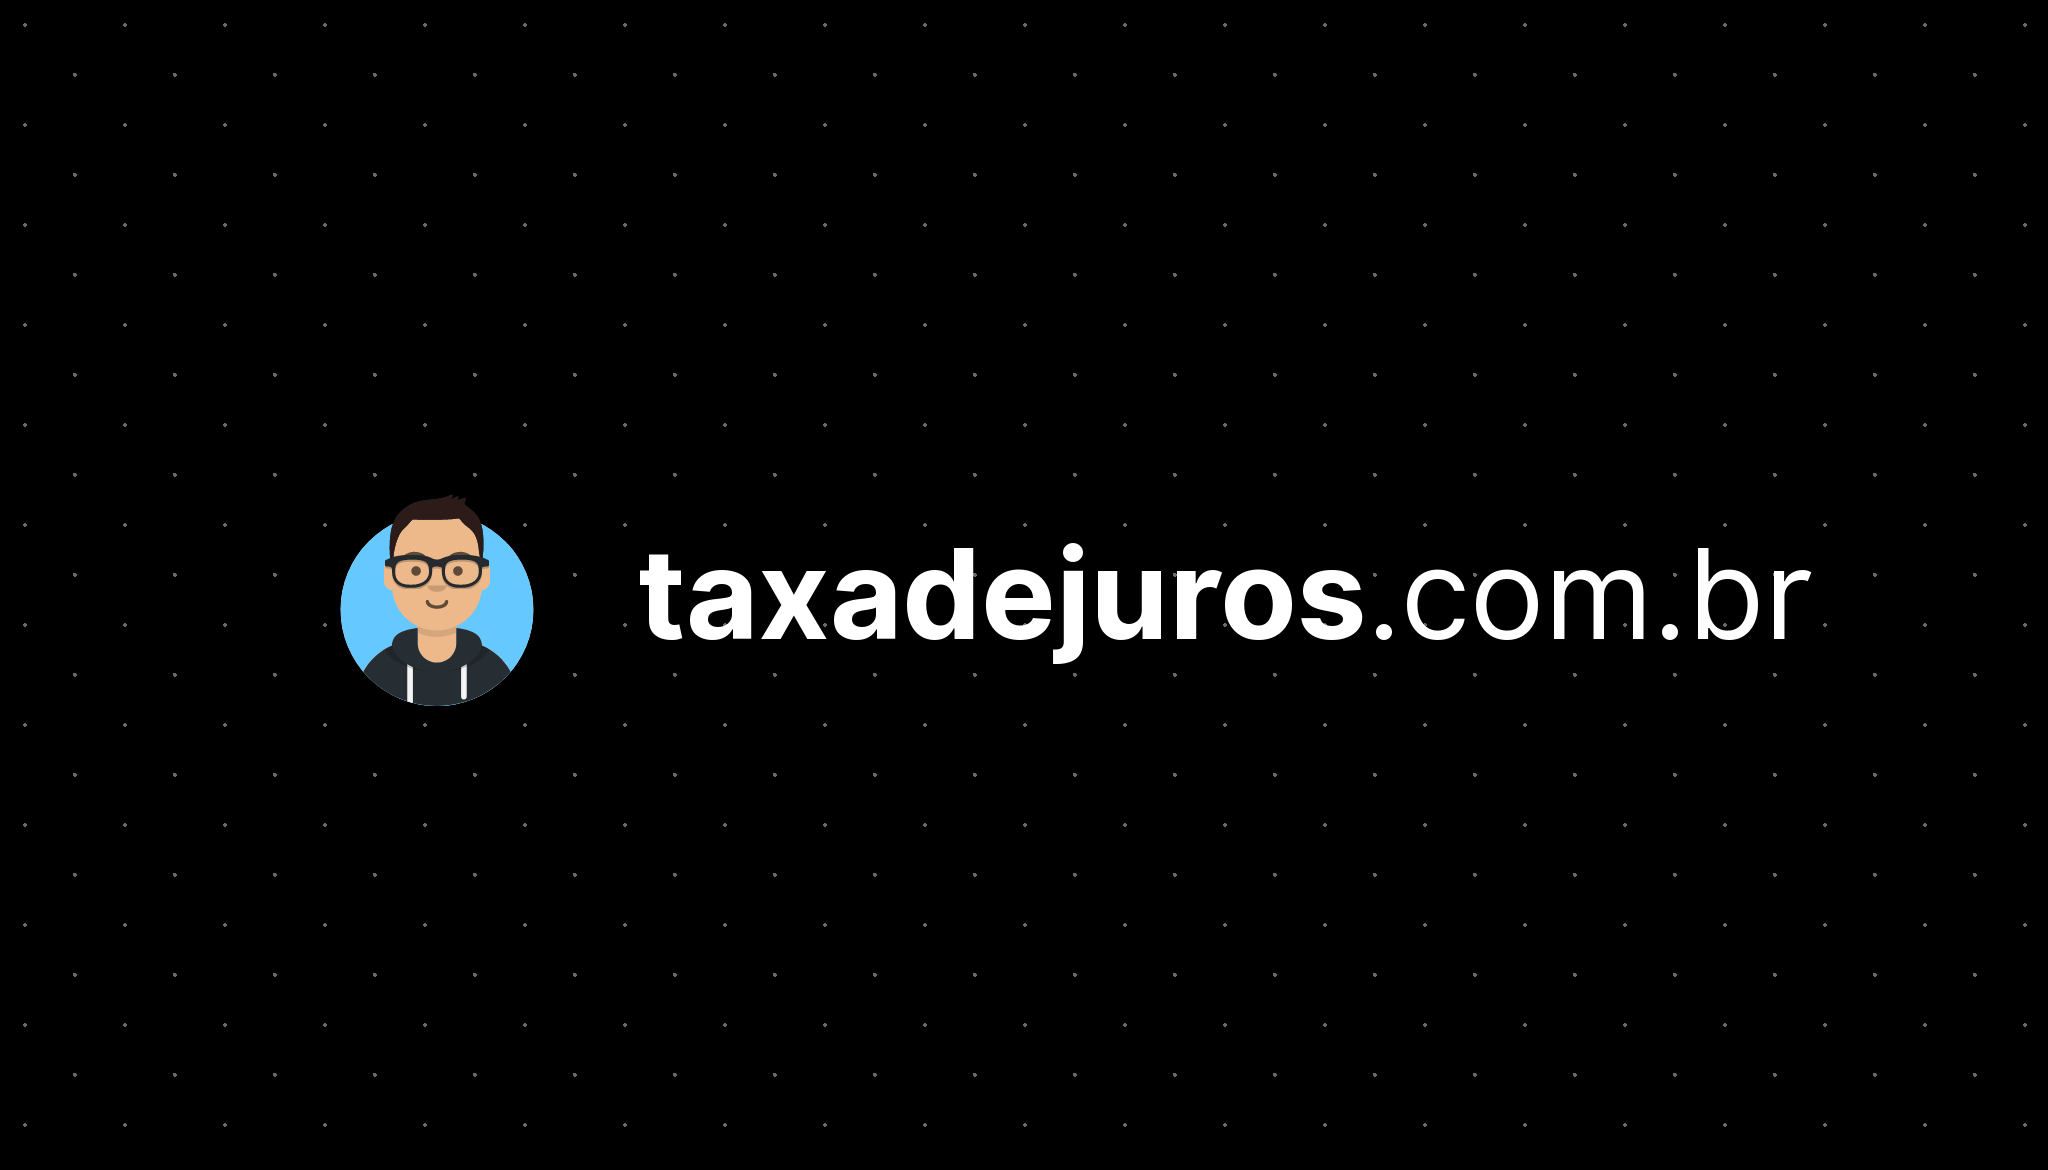 (c) Taxadejuros.com.br